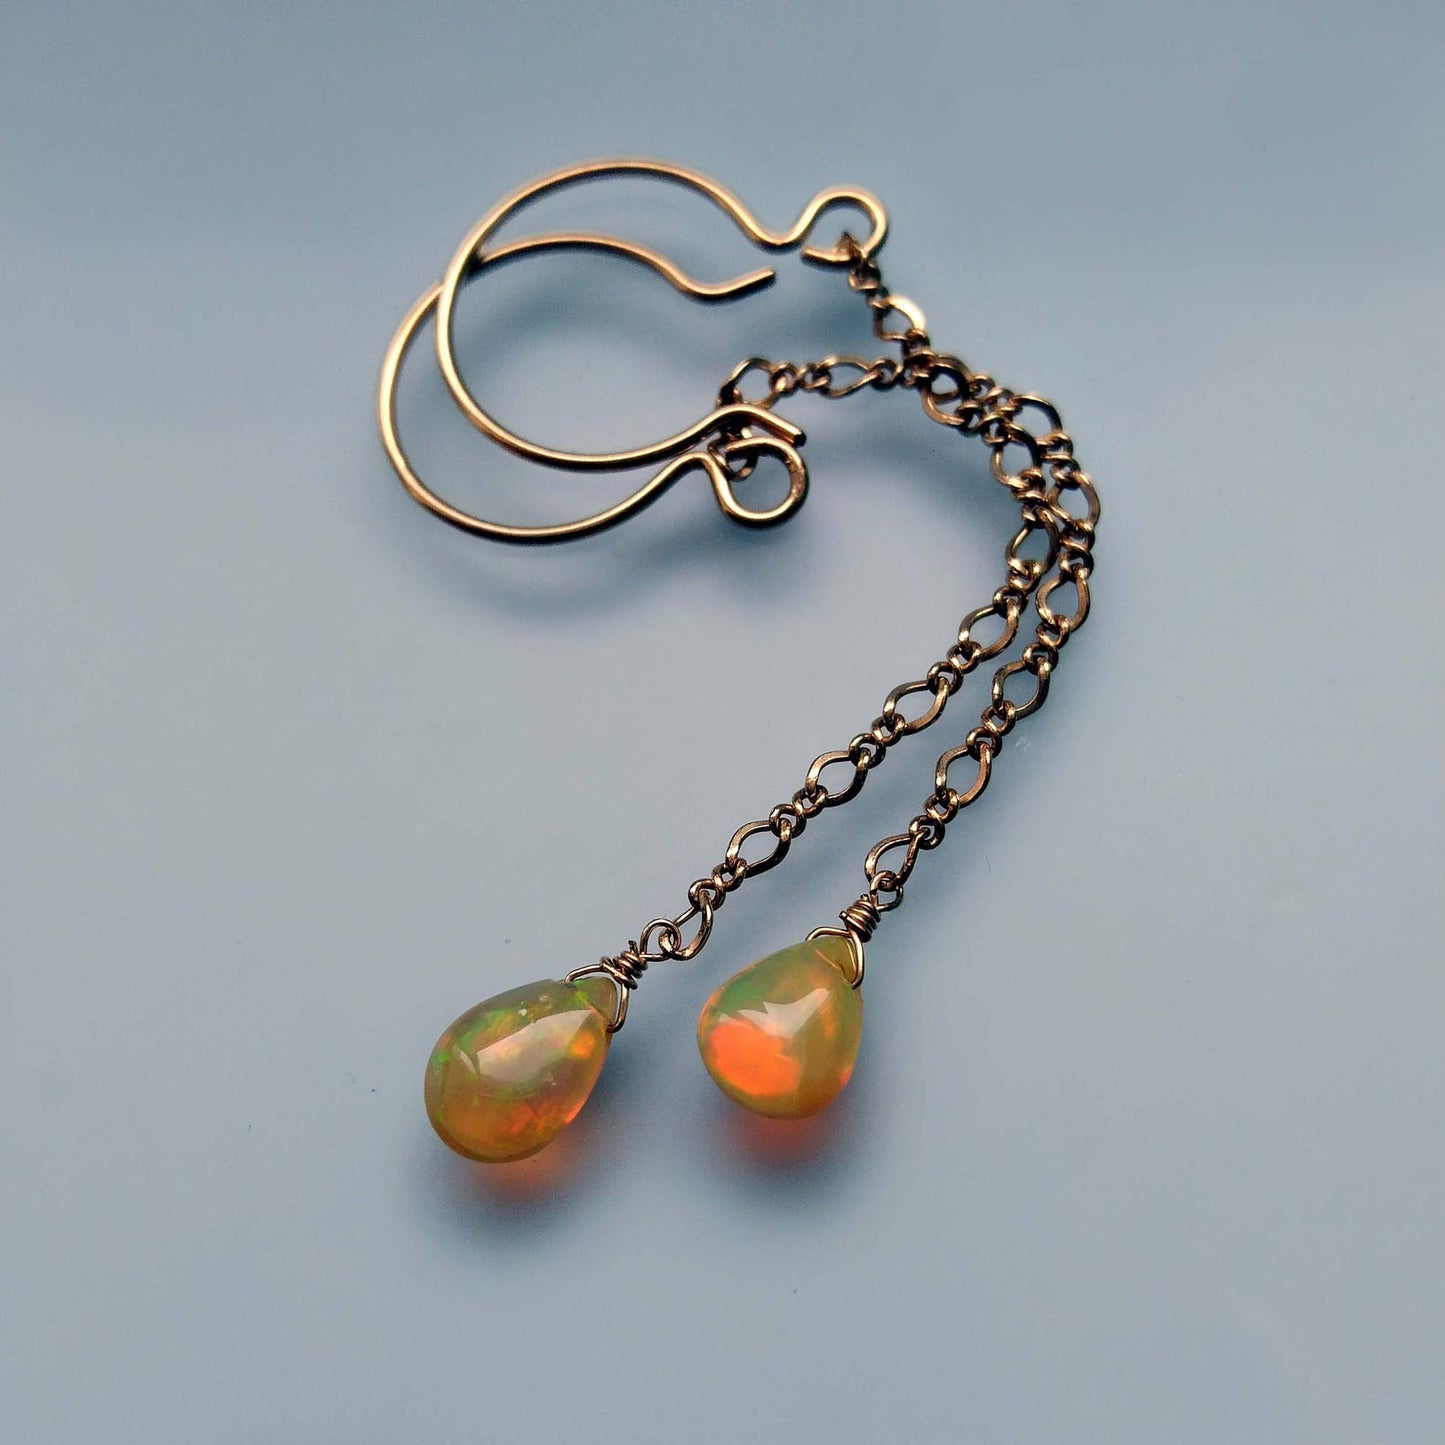 Welo Fair Opal Teardrop Earrings, 18K Gold Filled Long Chain, October Birthday Jewelry